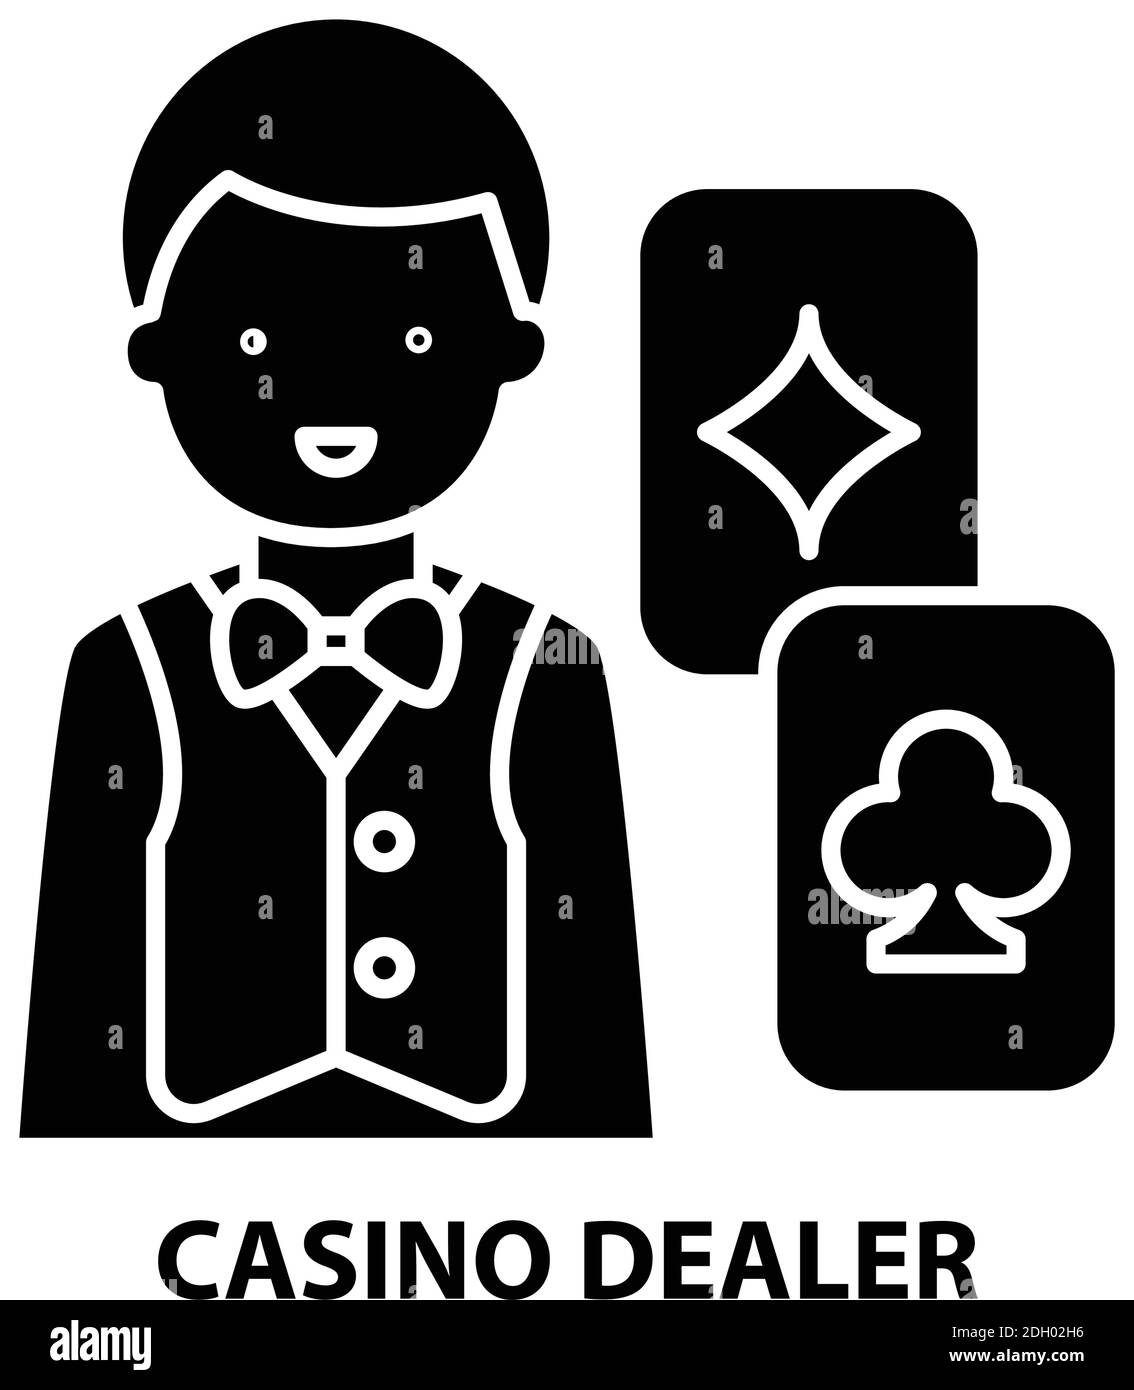 Отзывы в рассуждении казино Bitz Casino 2024 через игроков четверо объяснения через объективных граждане о заключении дензнак, игровых условиях